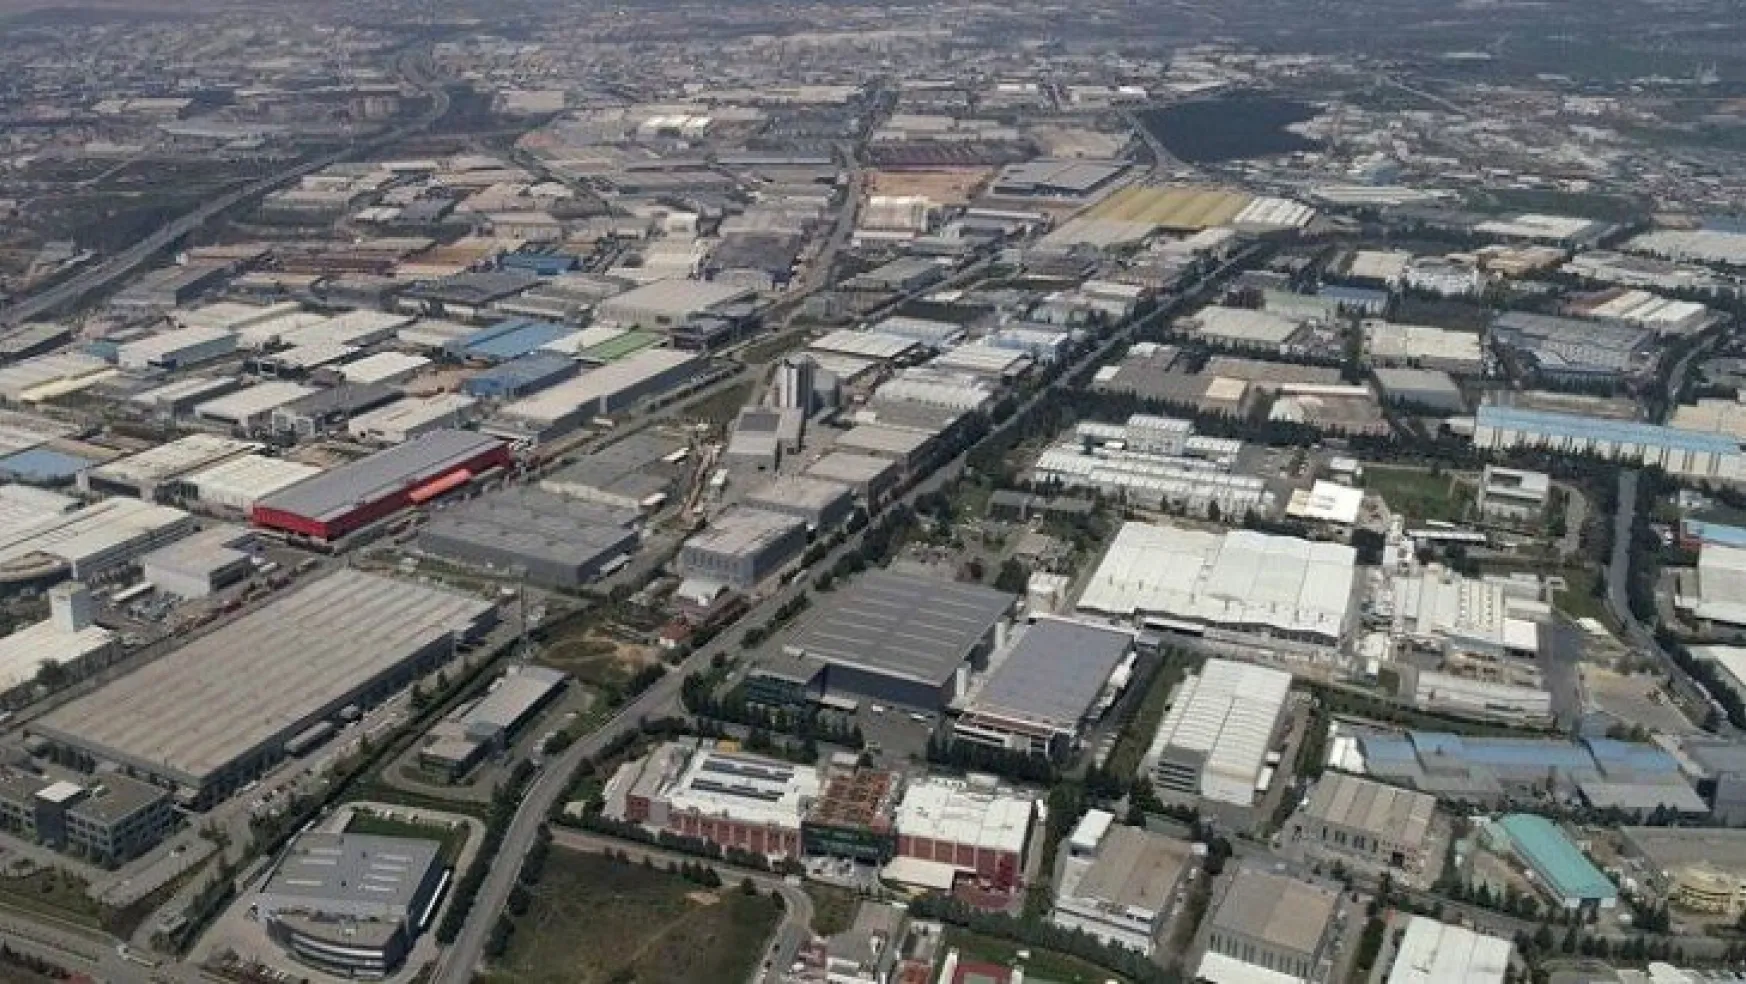 Sanayi kenti Kocaeli'de üretim devam ediyor